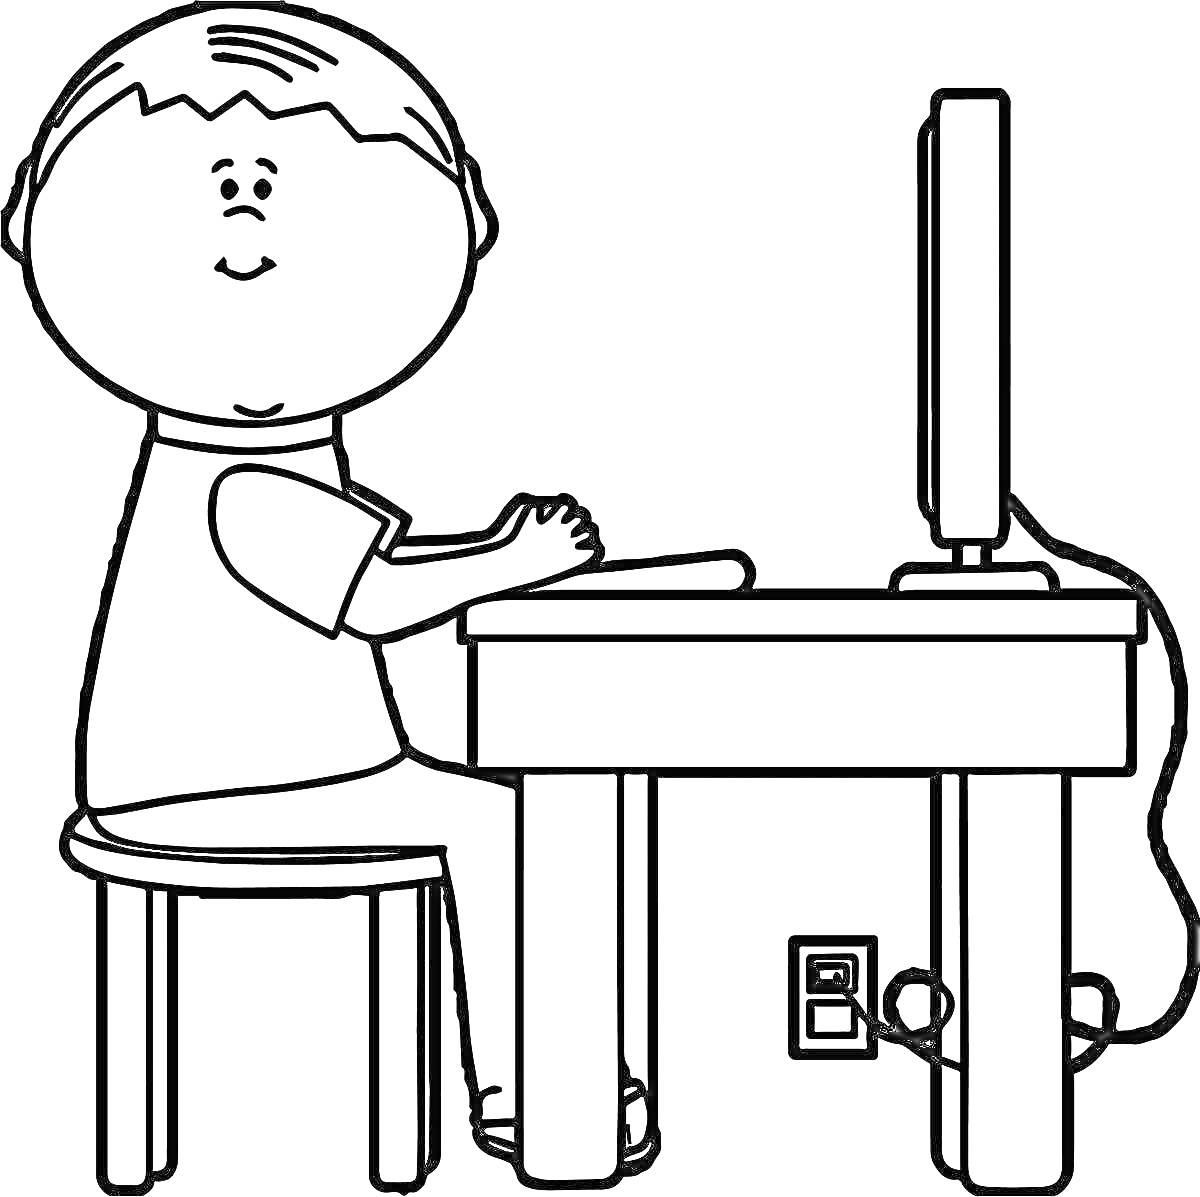 Ребенок за компьютером, сидящий на стуле у стола с включенным монитором